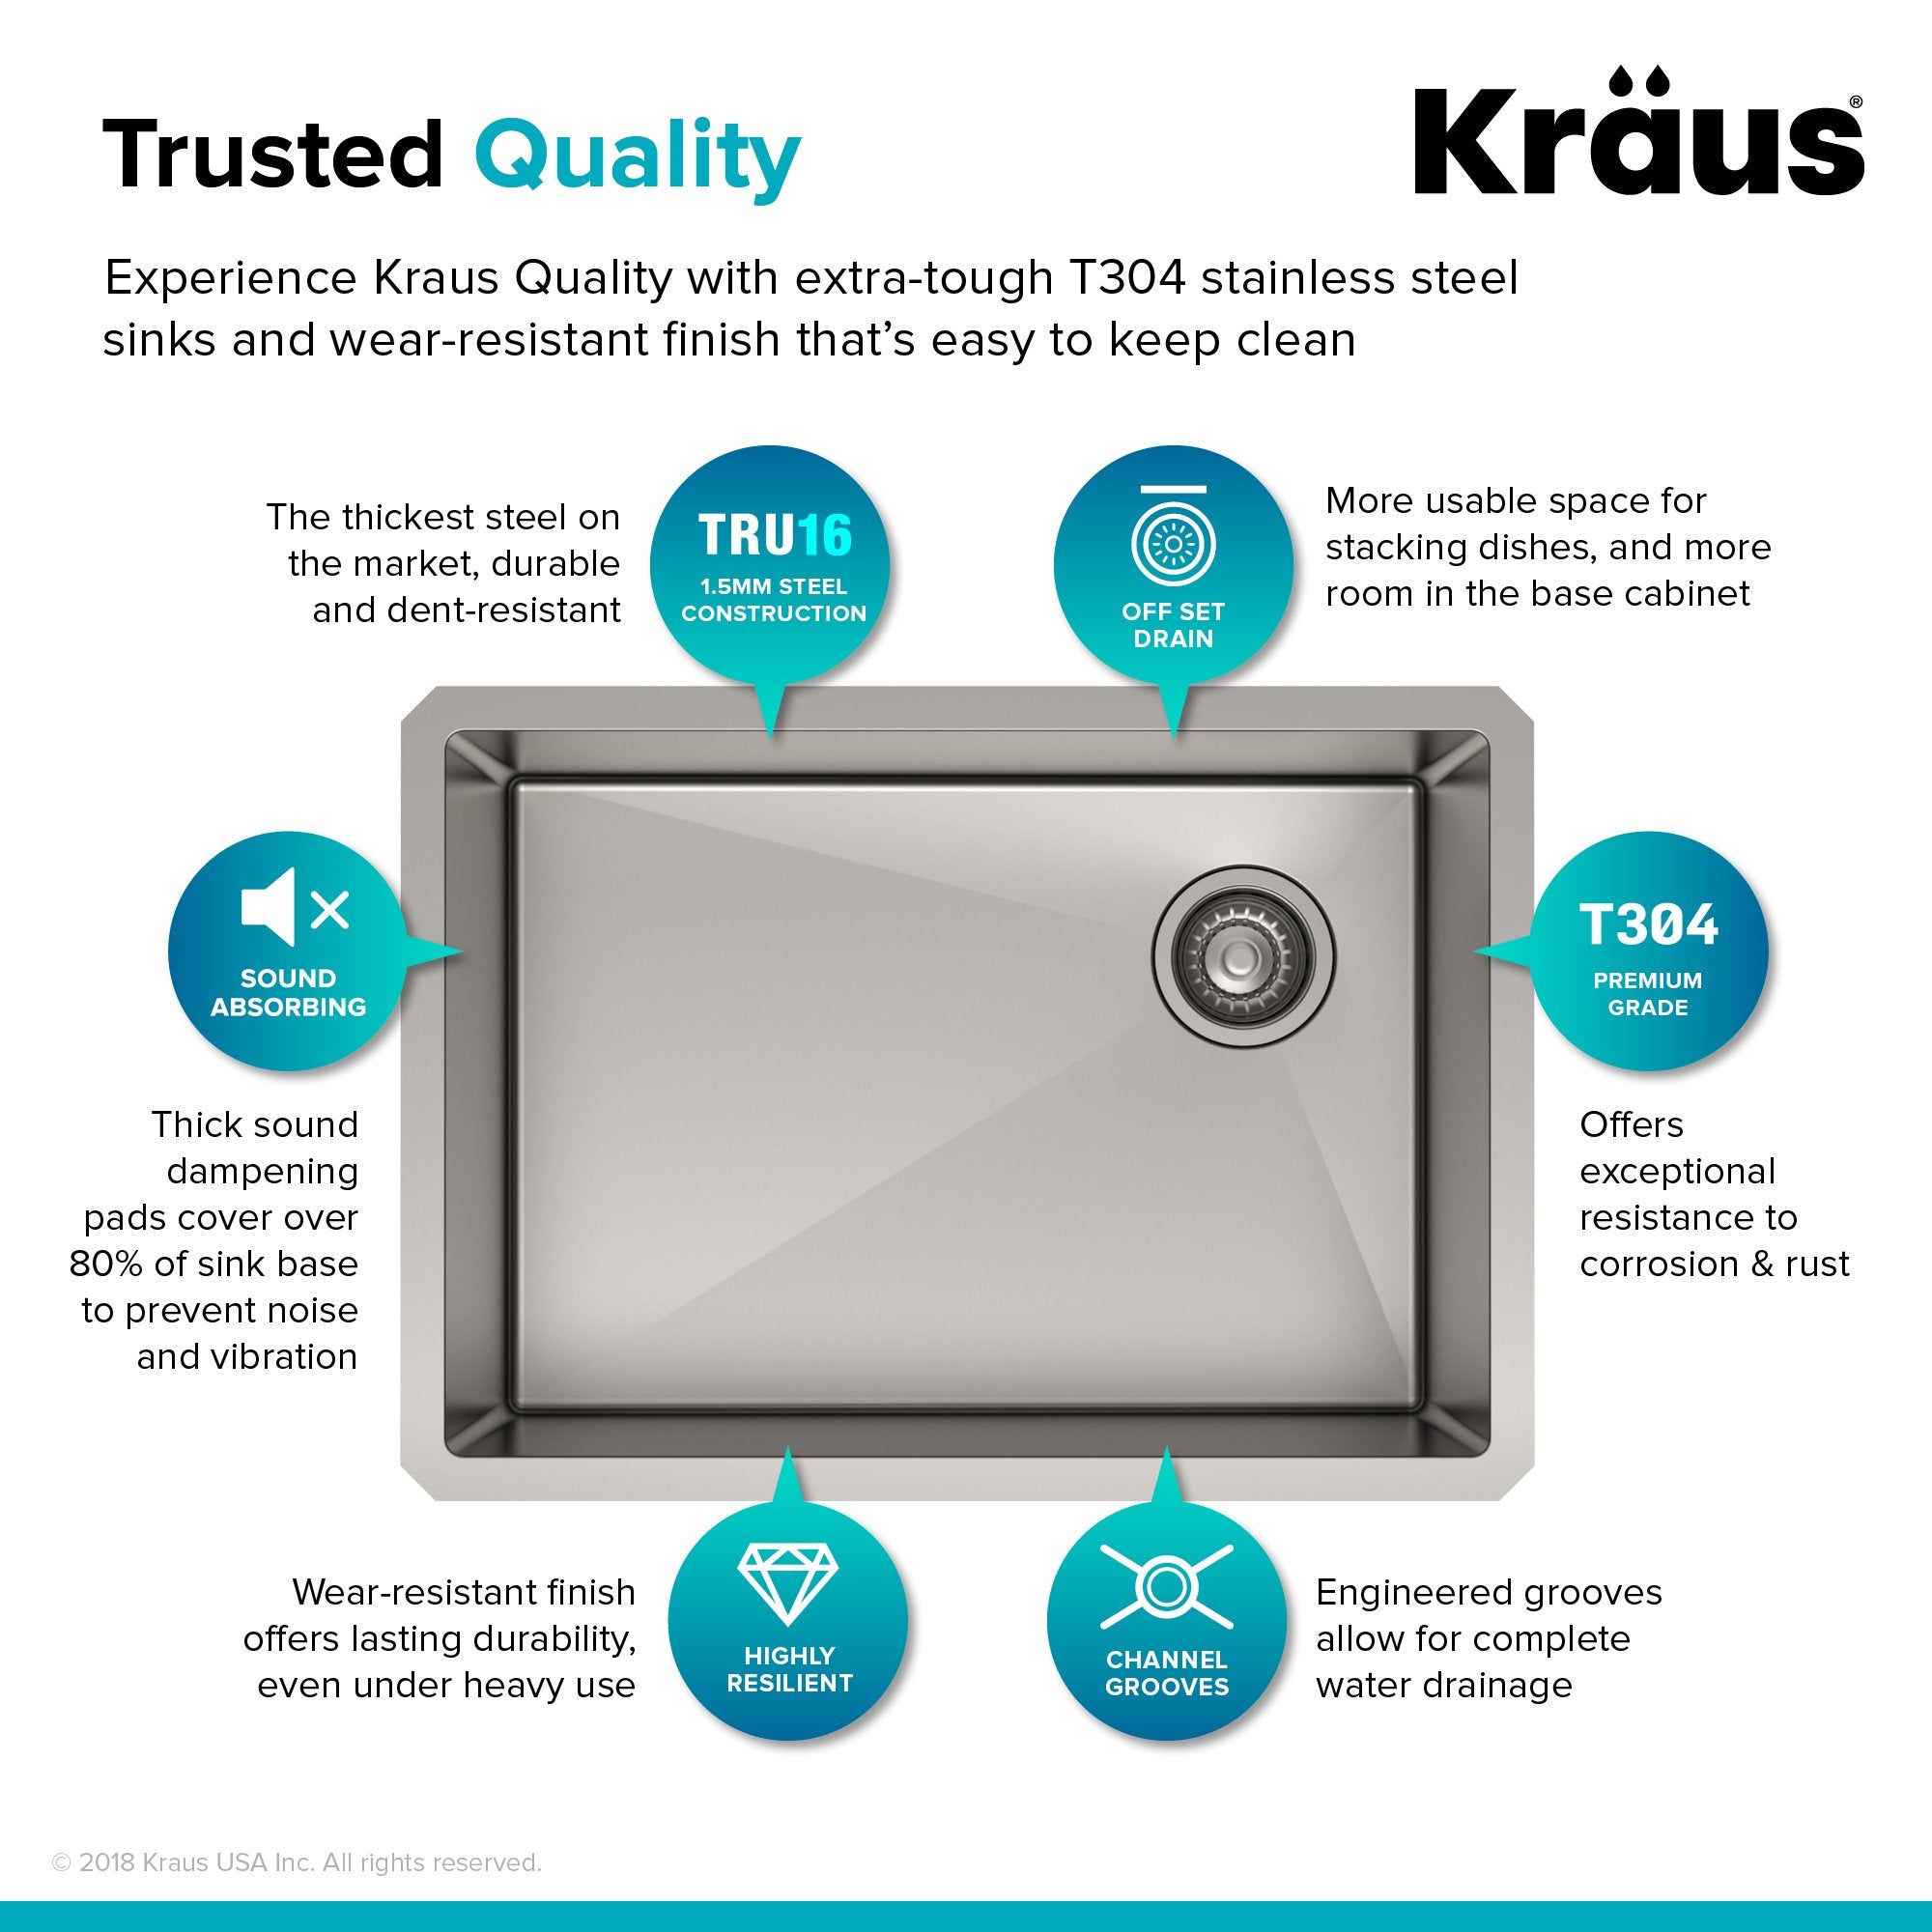 KRAUS 25" 16 Gauge Undermount Single Bowl Stainless Steel Kitchen Sink with Off Center Drain-Kitchen Sinks-KRAUS